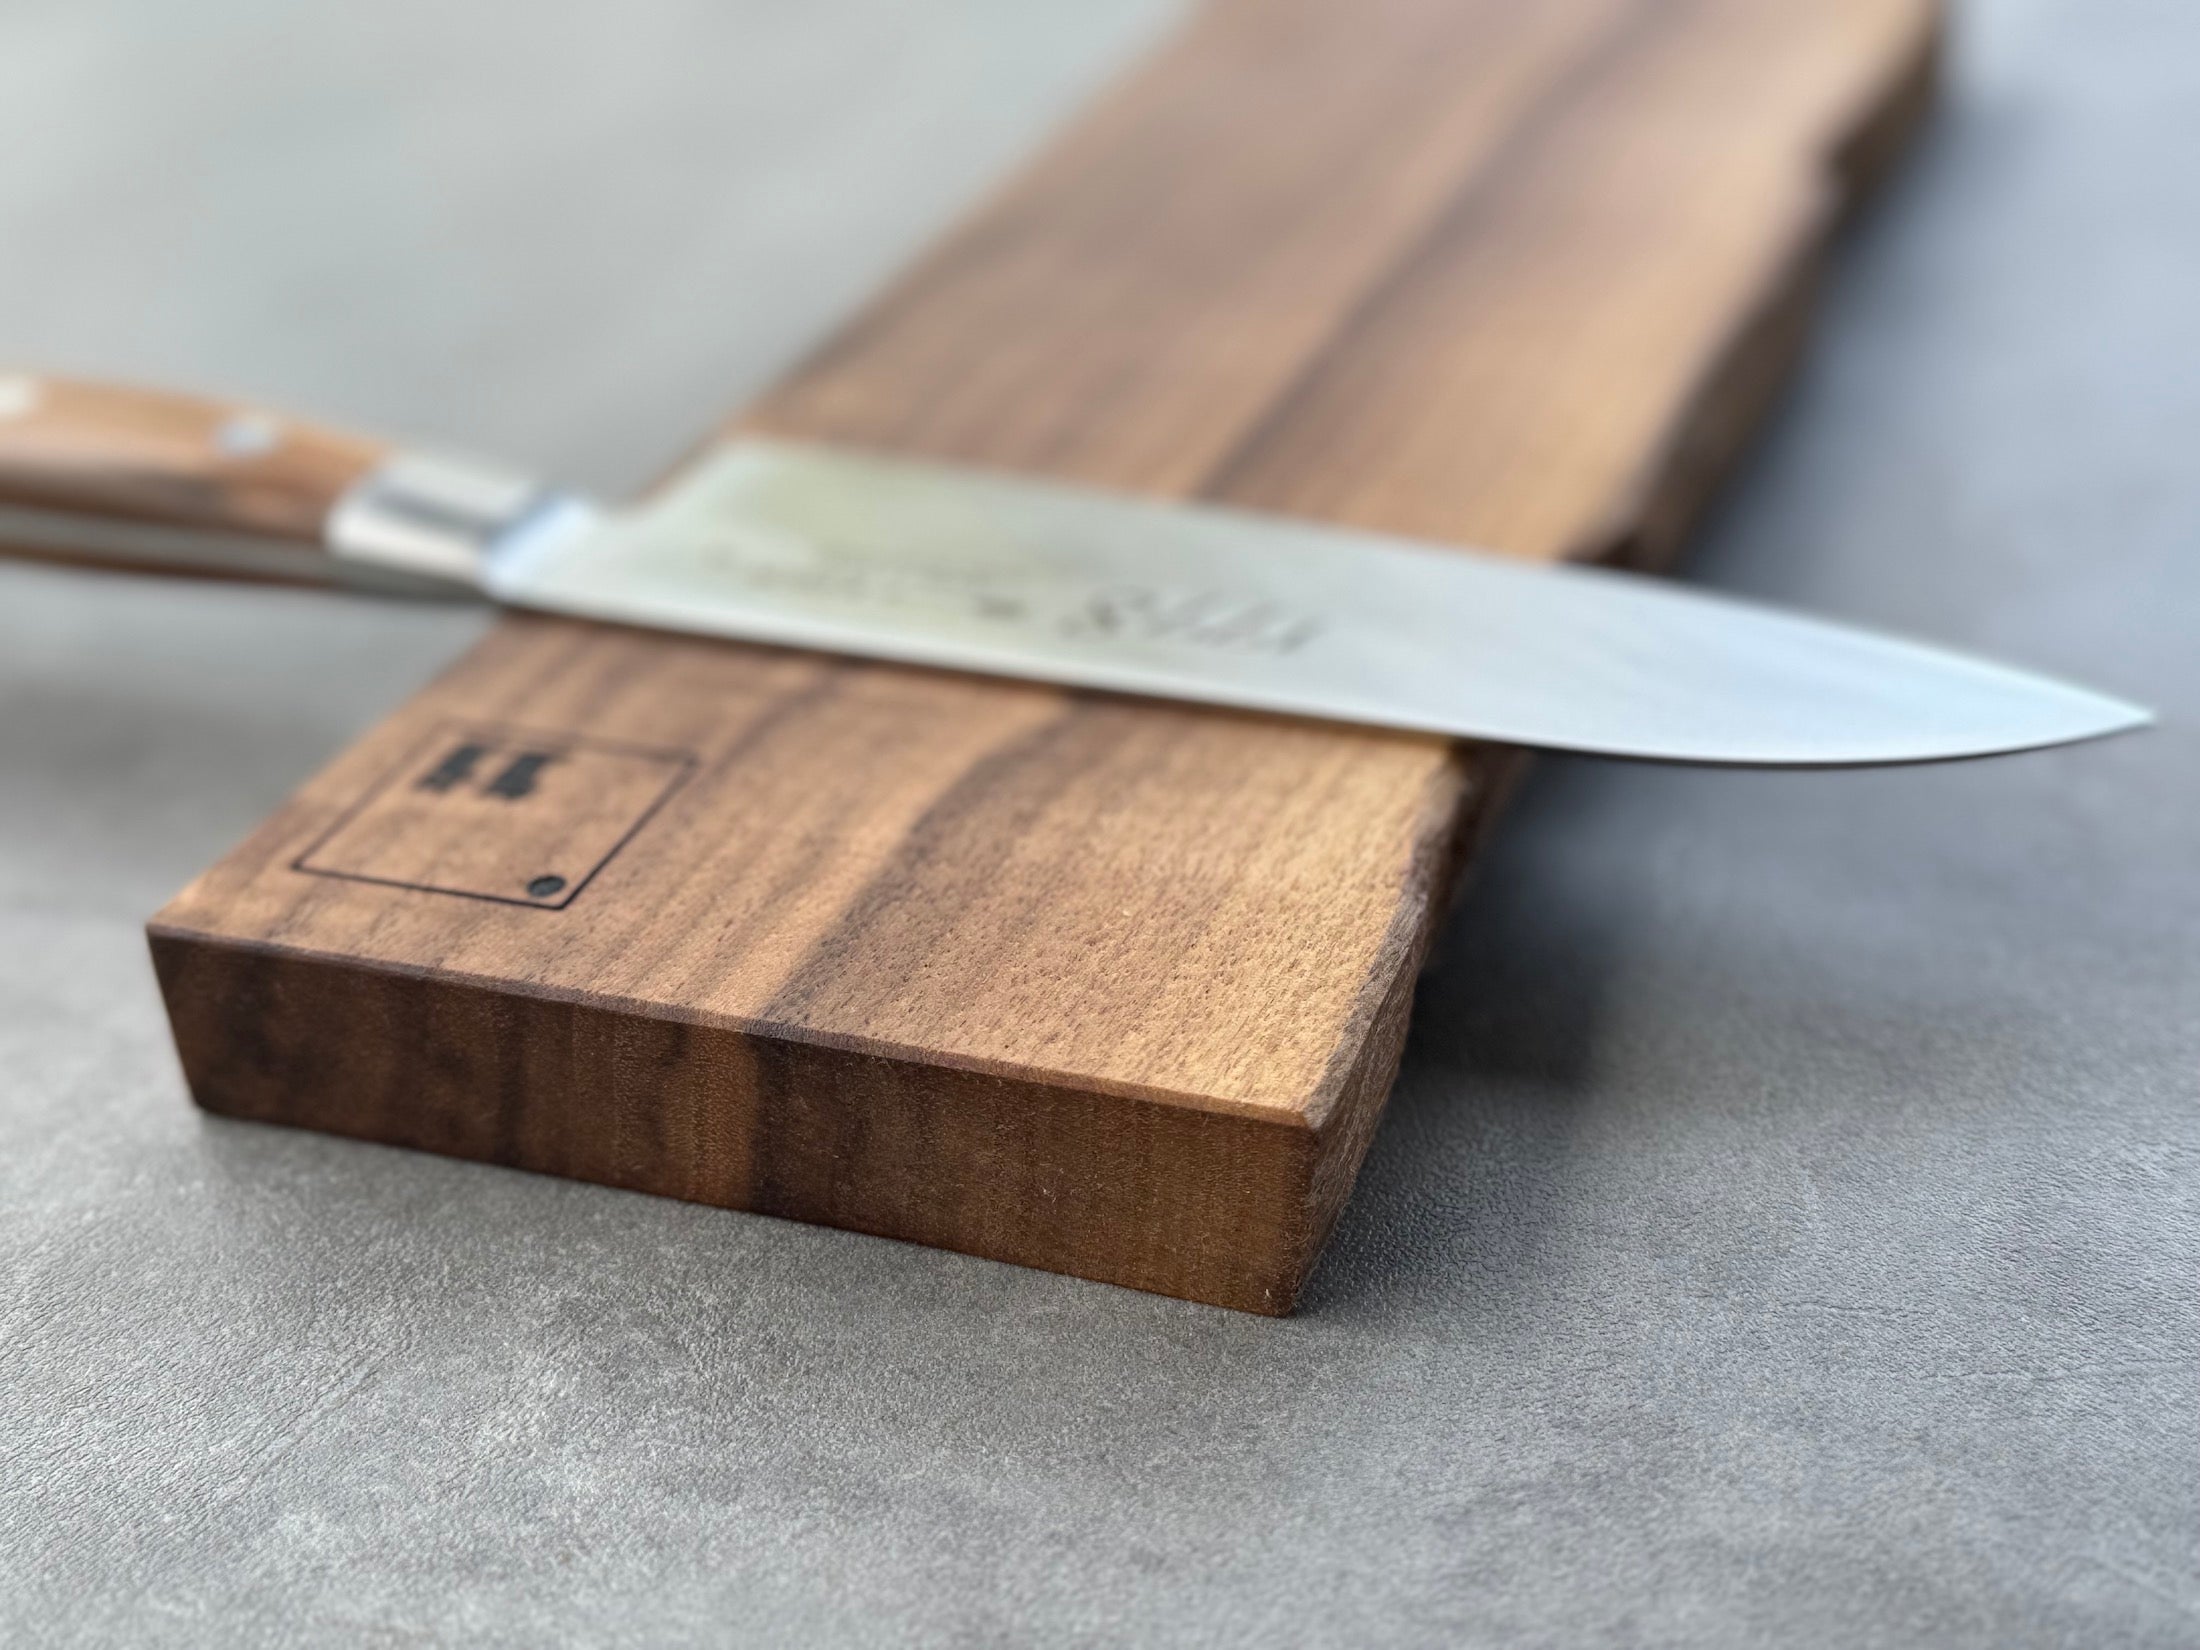 Detailansicht der Baumkante bei einem Messerhalter.